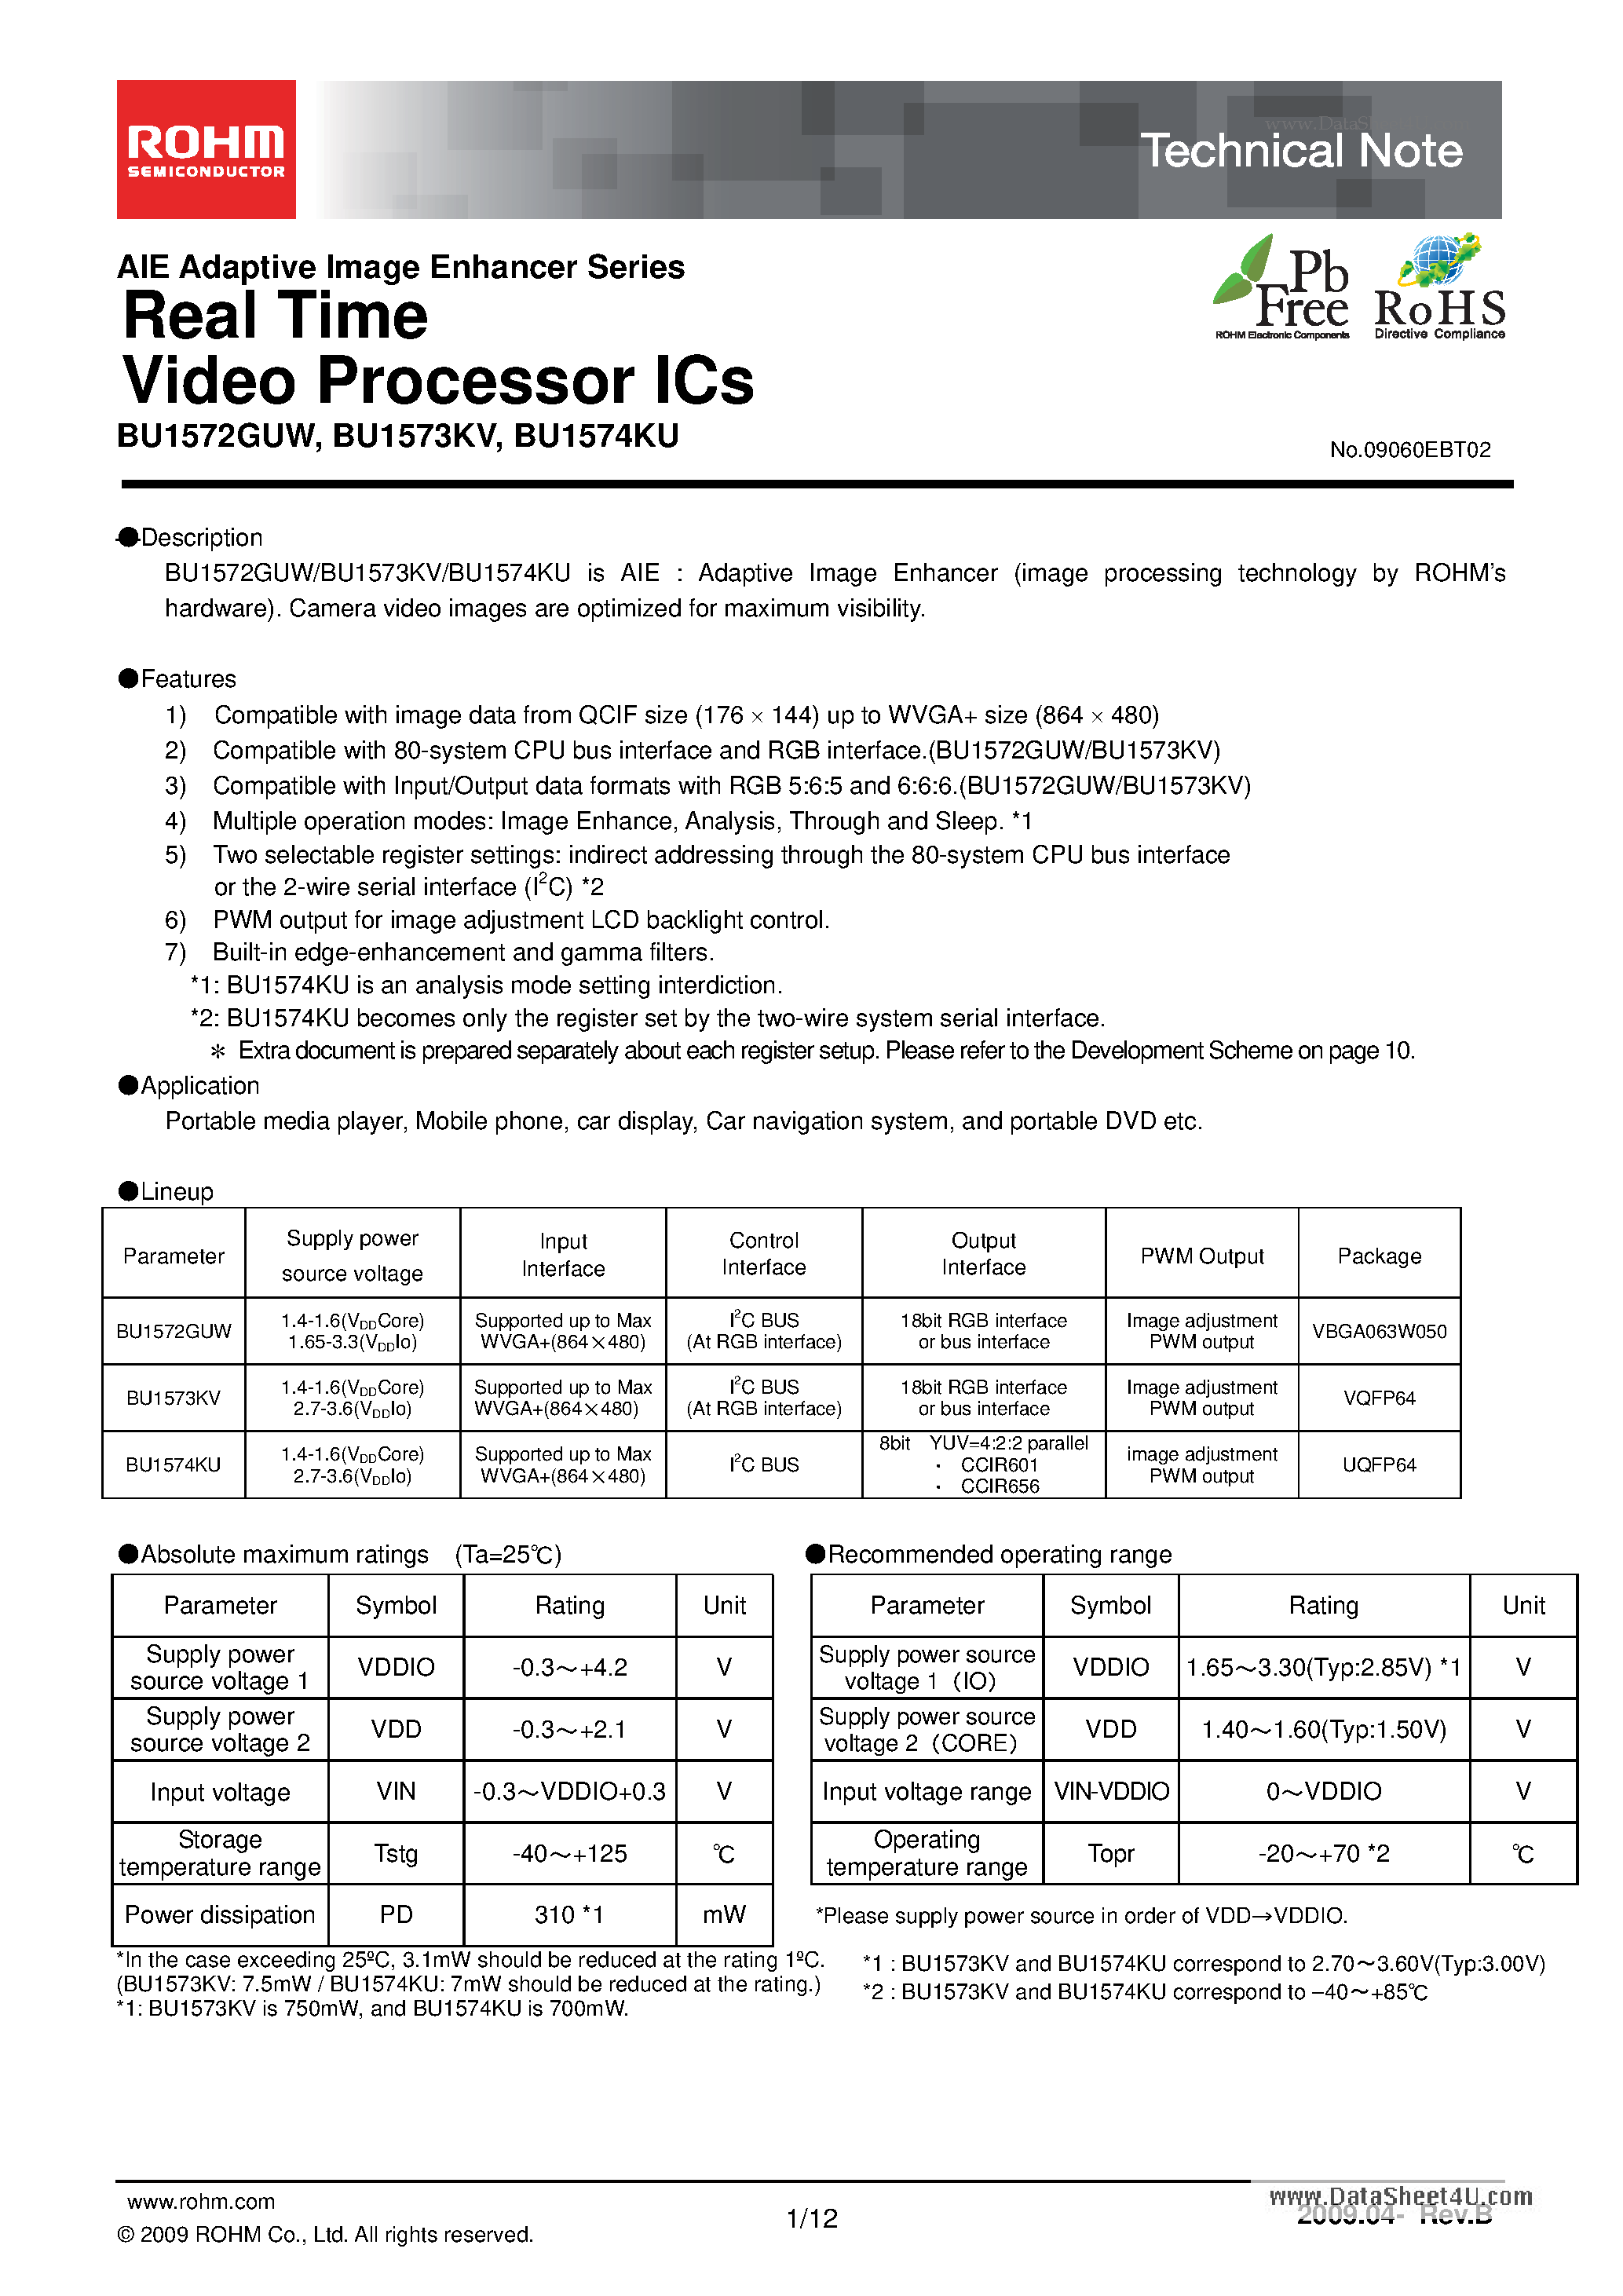 Даташит BU1572GUW - Real Time Video Processor ICs страница 1